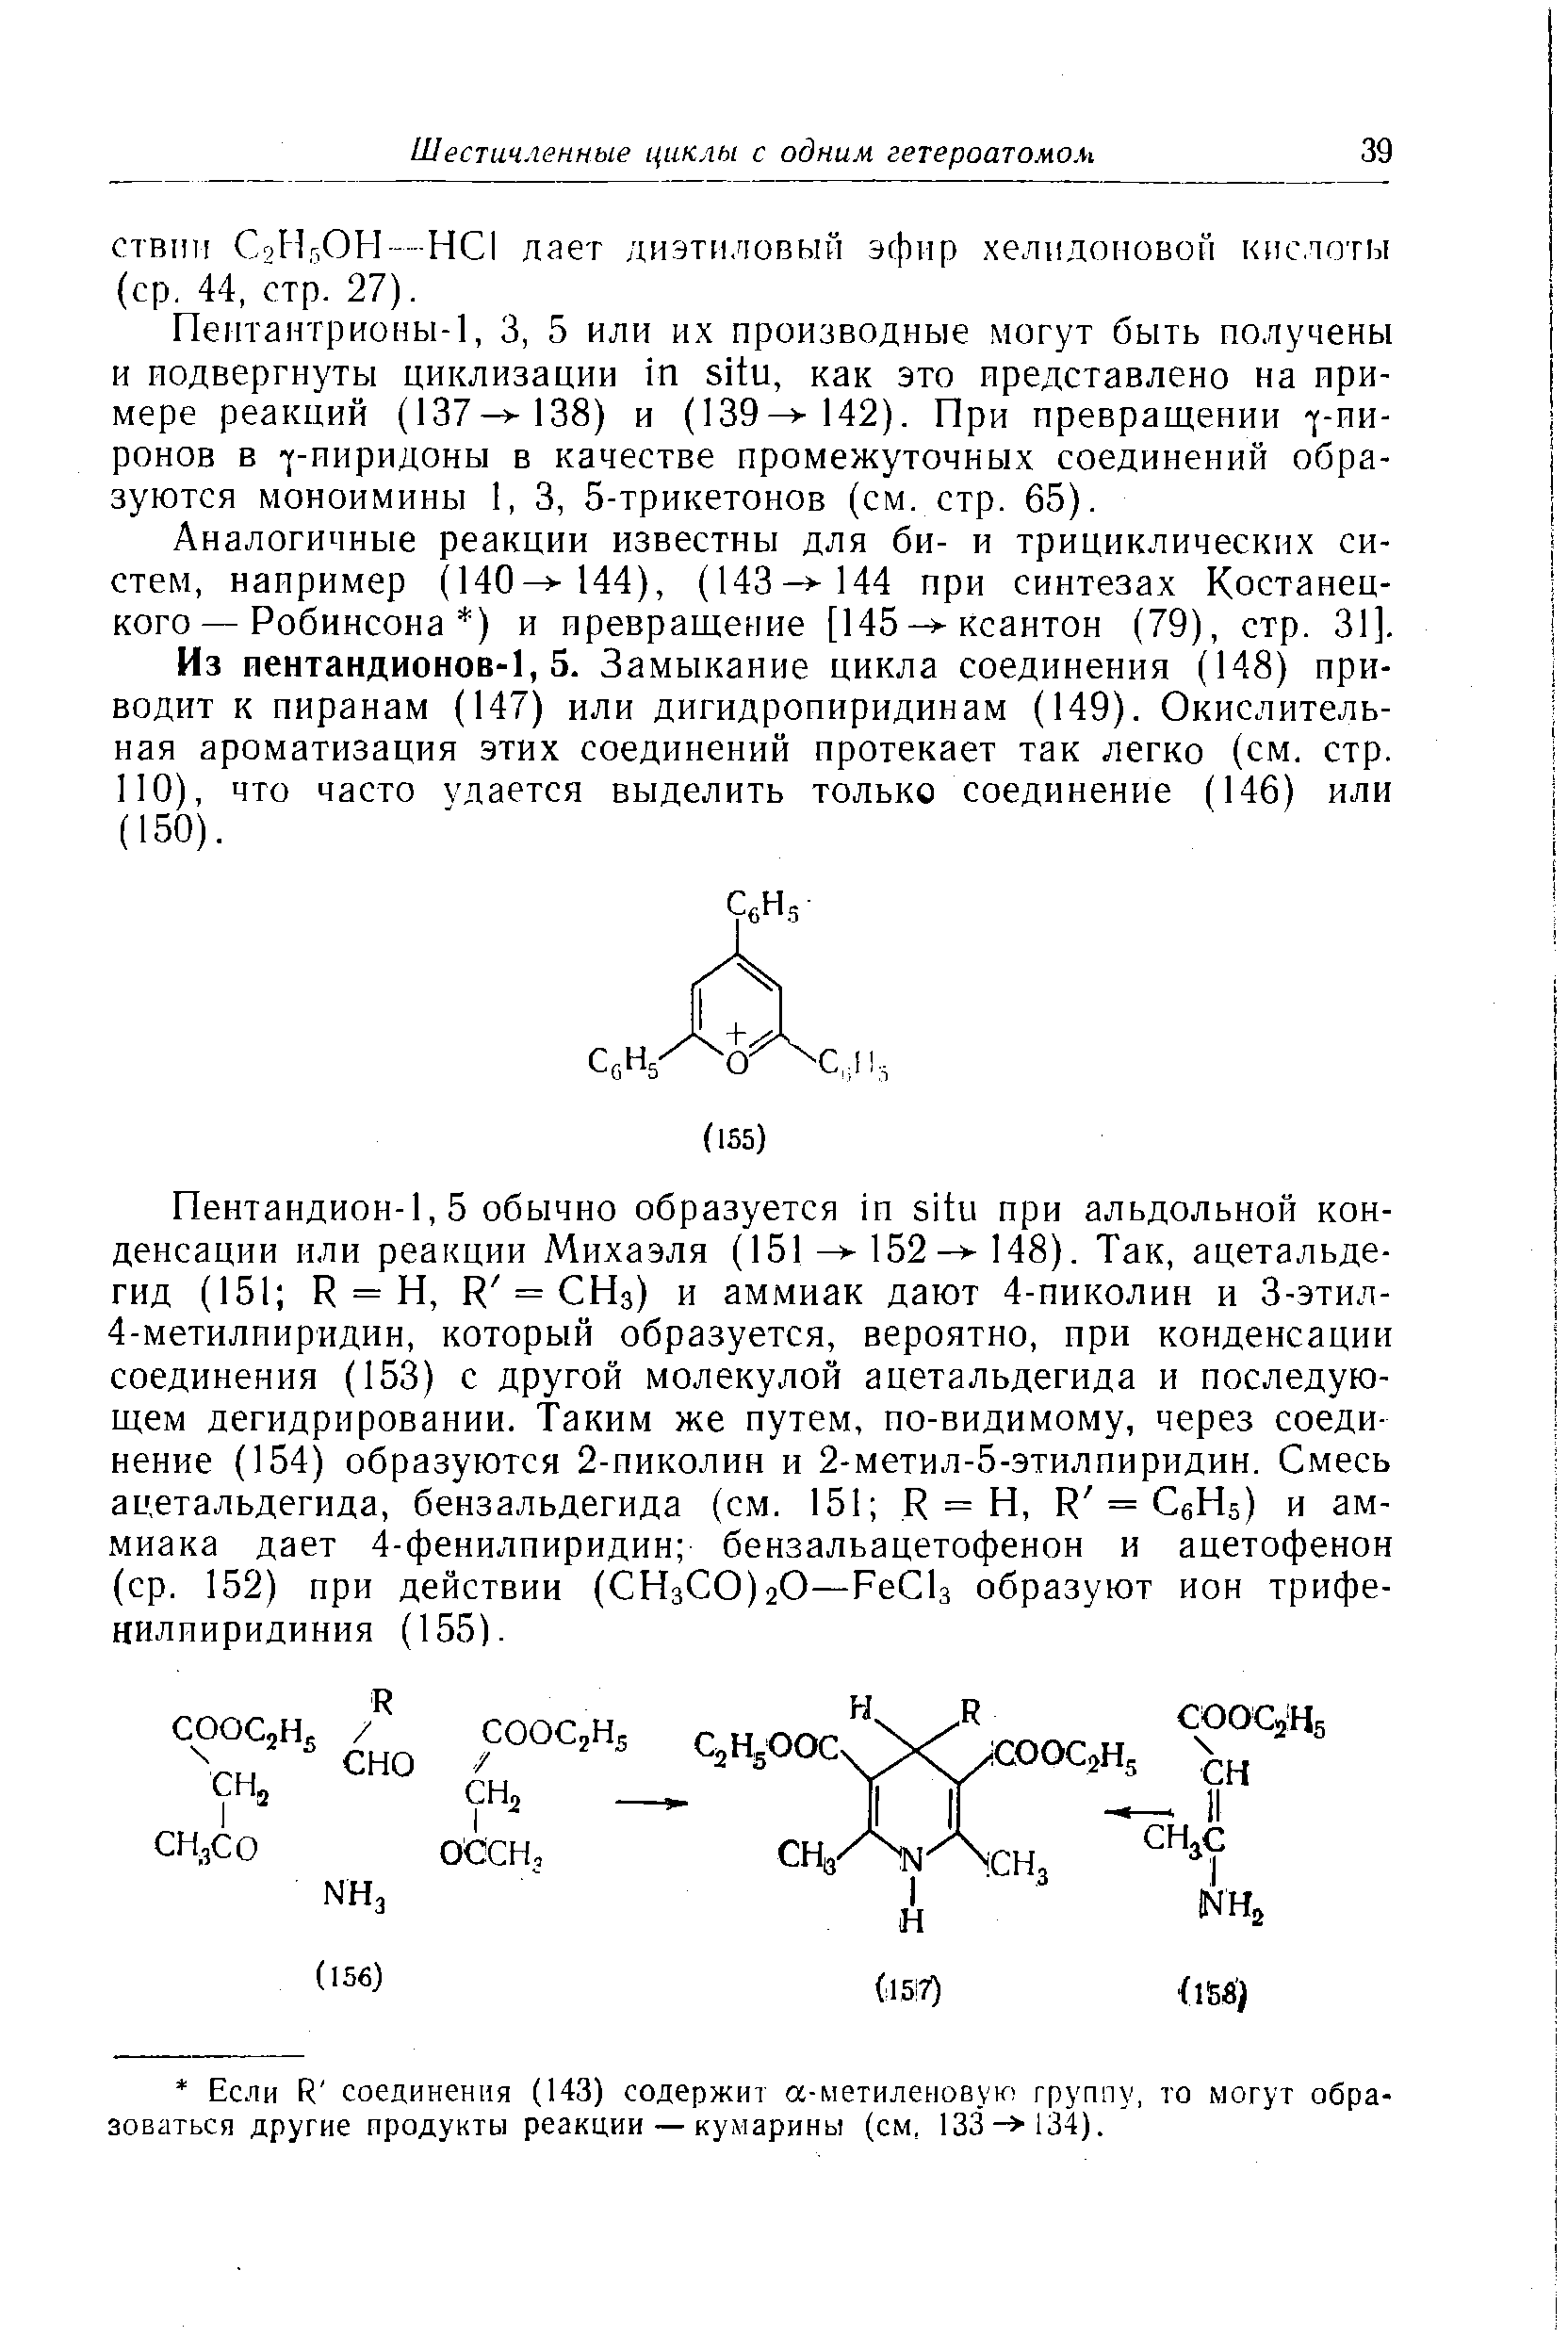 Аналогичные реакции известны для би- и трициклических систем, например (140 144), (143- 144 при синтезах Костанецкого — Робинсона ) и превращение [145- ксантон (79), стр. 31].